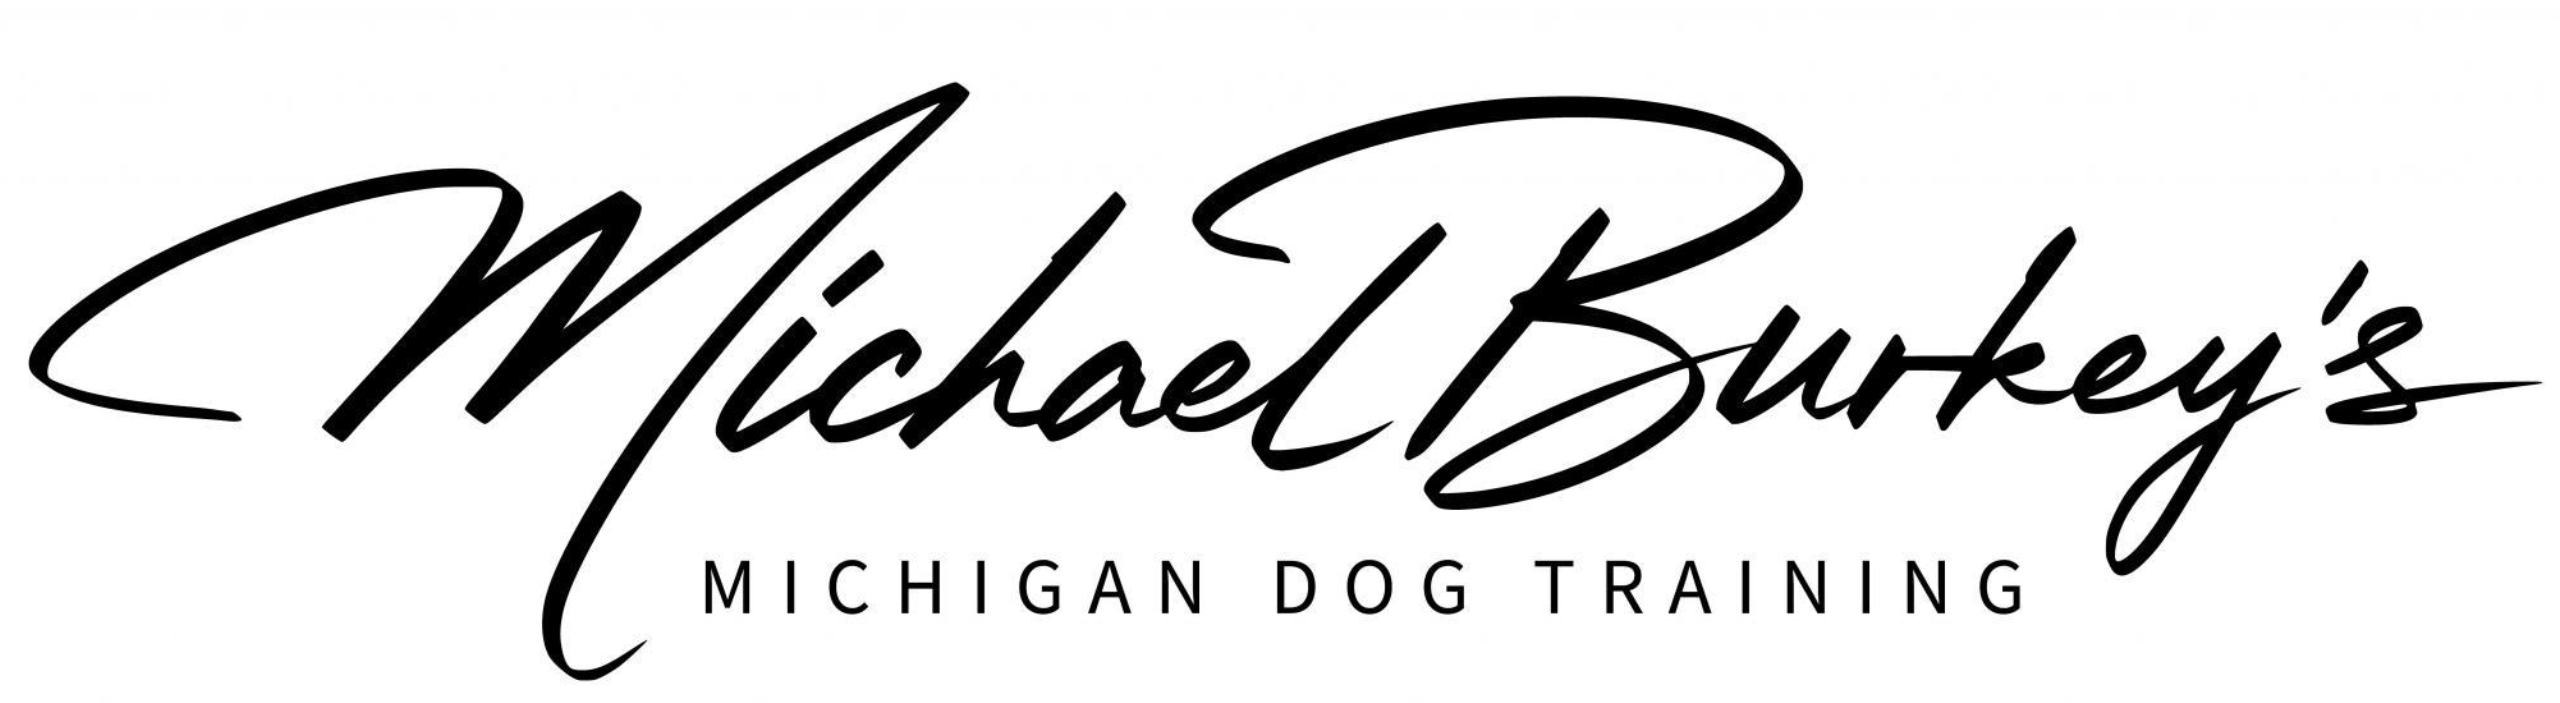 Michigan Dog Training, Inc Logo